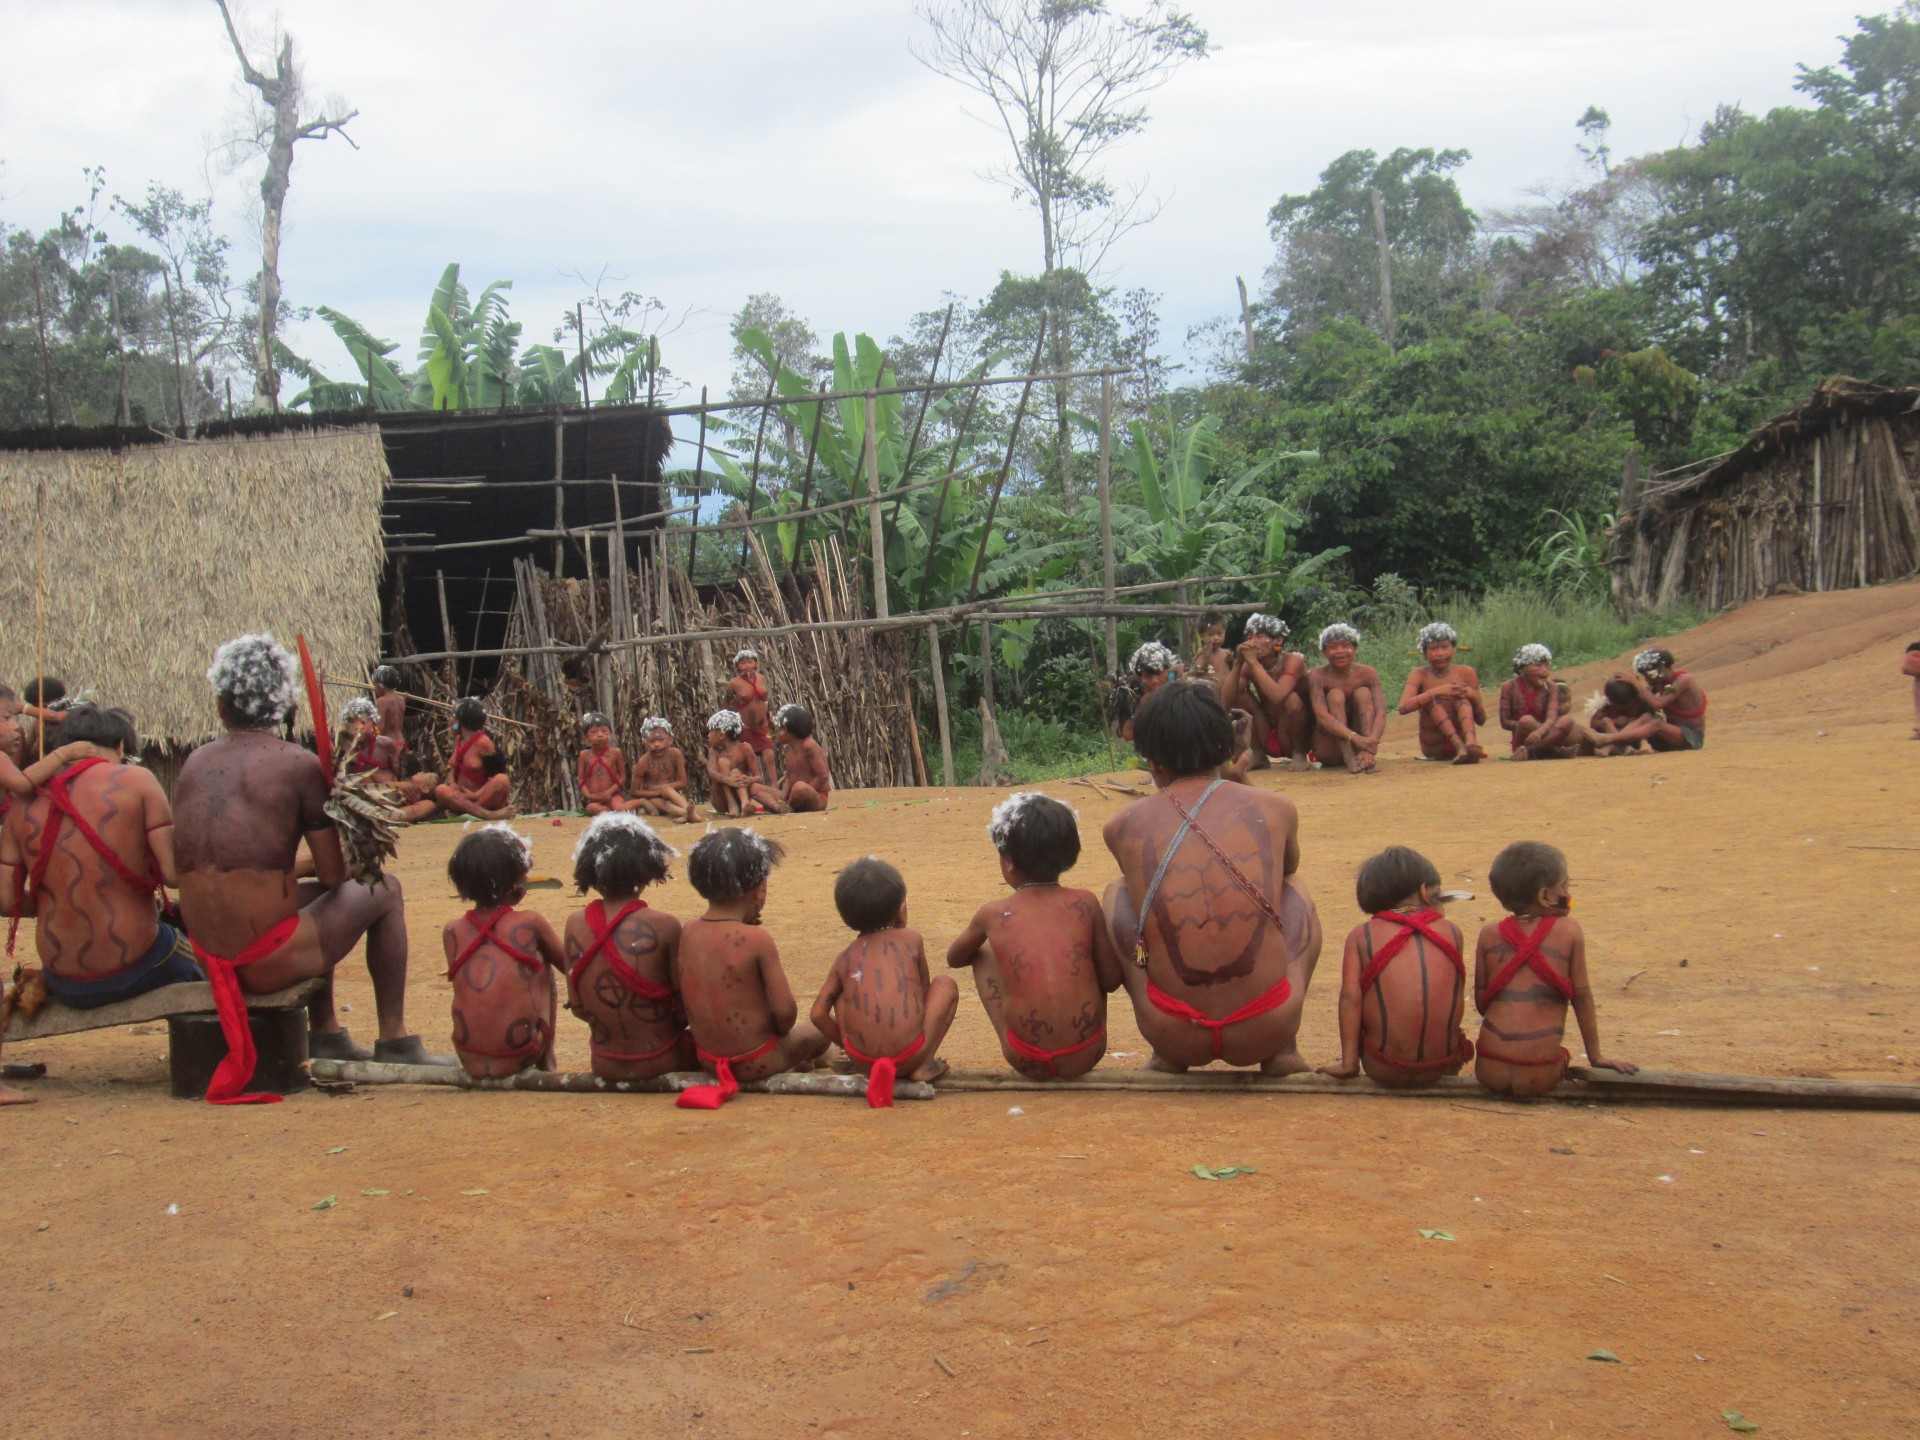 Brasil: Un grupo indígena arrestó a 12 mineros ilegales y los entregó a la policía